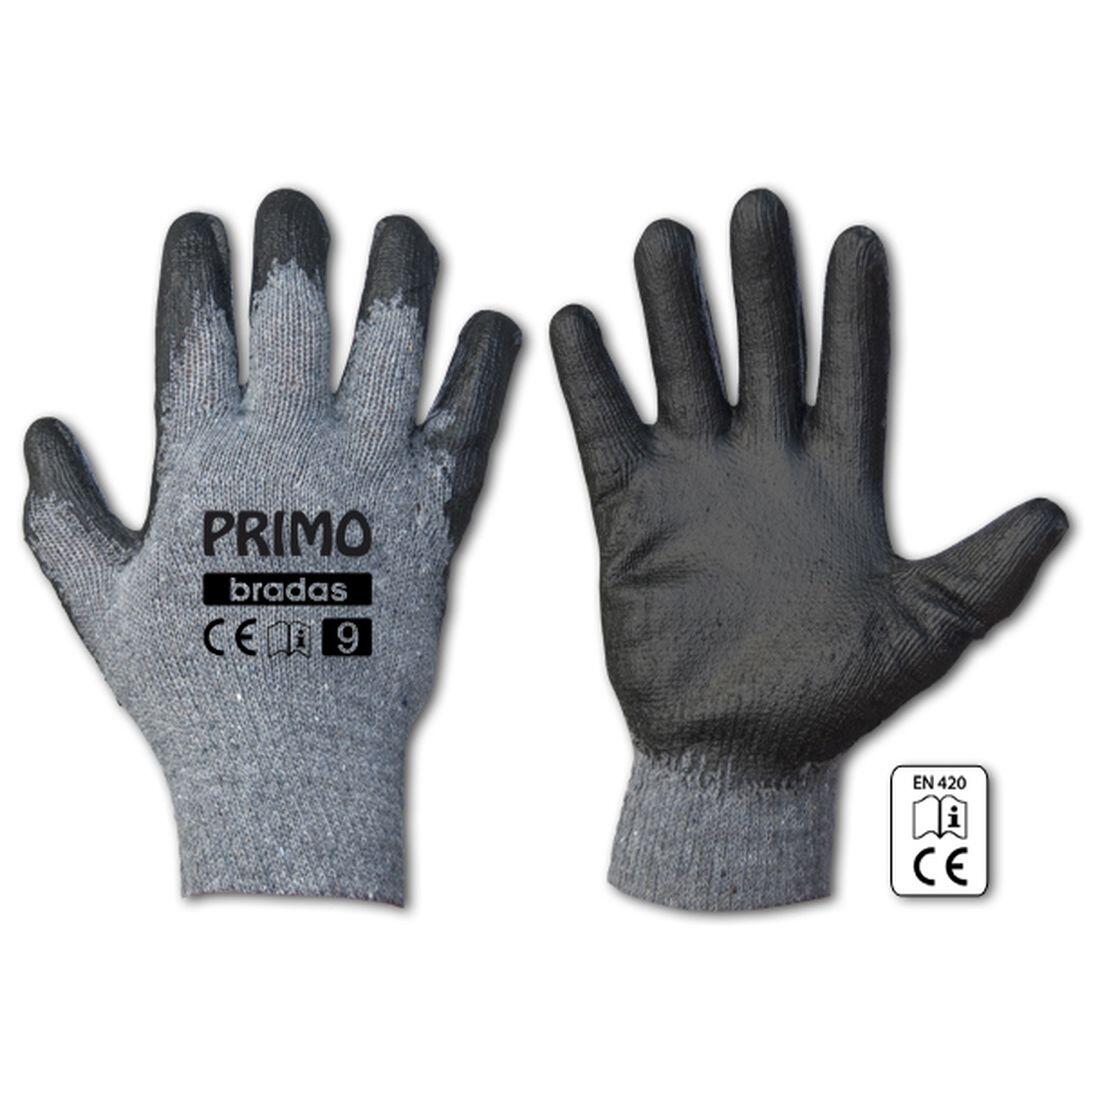 rukavice PRIMO latex  8 0.07 Kg MAXMIX Sklad14 715682 358